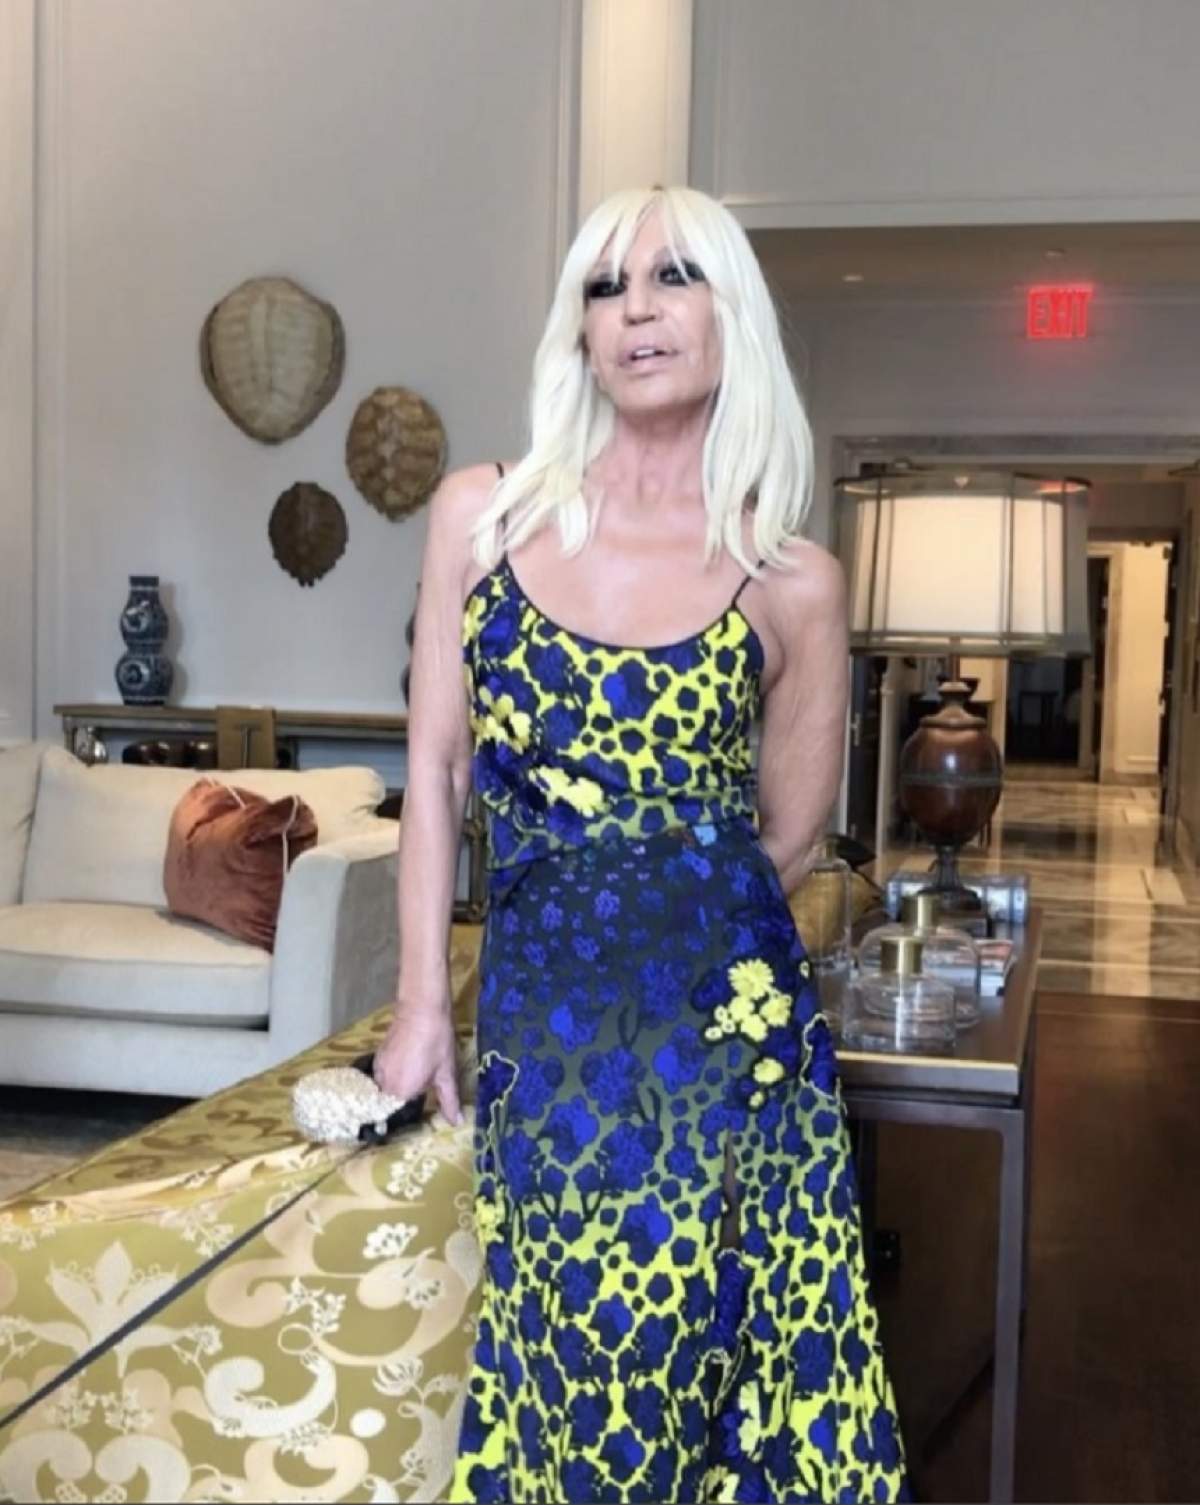 VIDEO / Imagini spectaculoase! Celebra creatoare Donatella Versace are o vilă de 41 de milioane de dolari